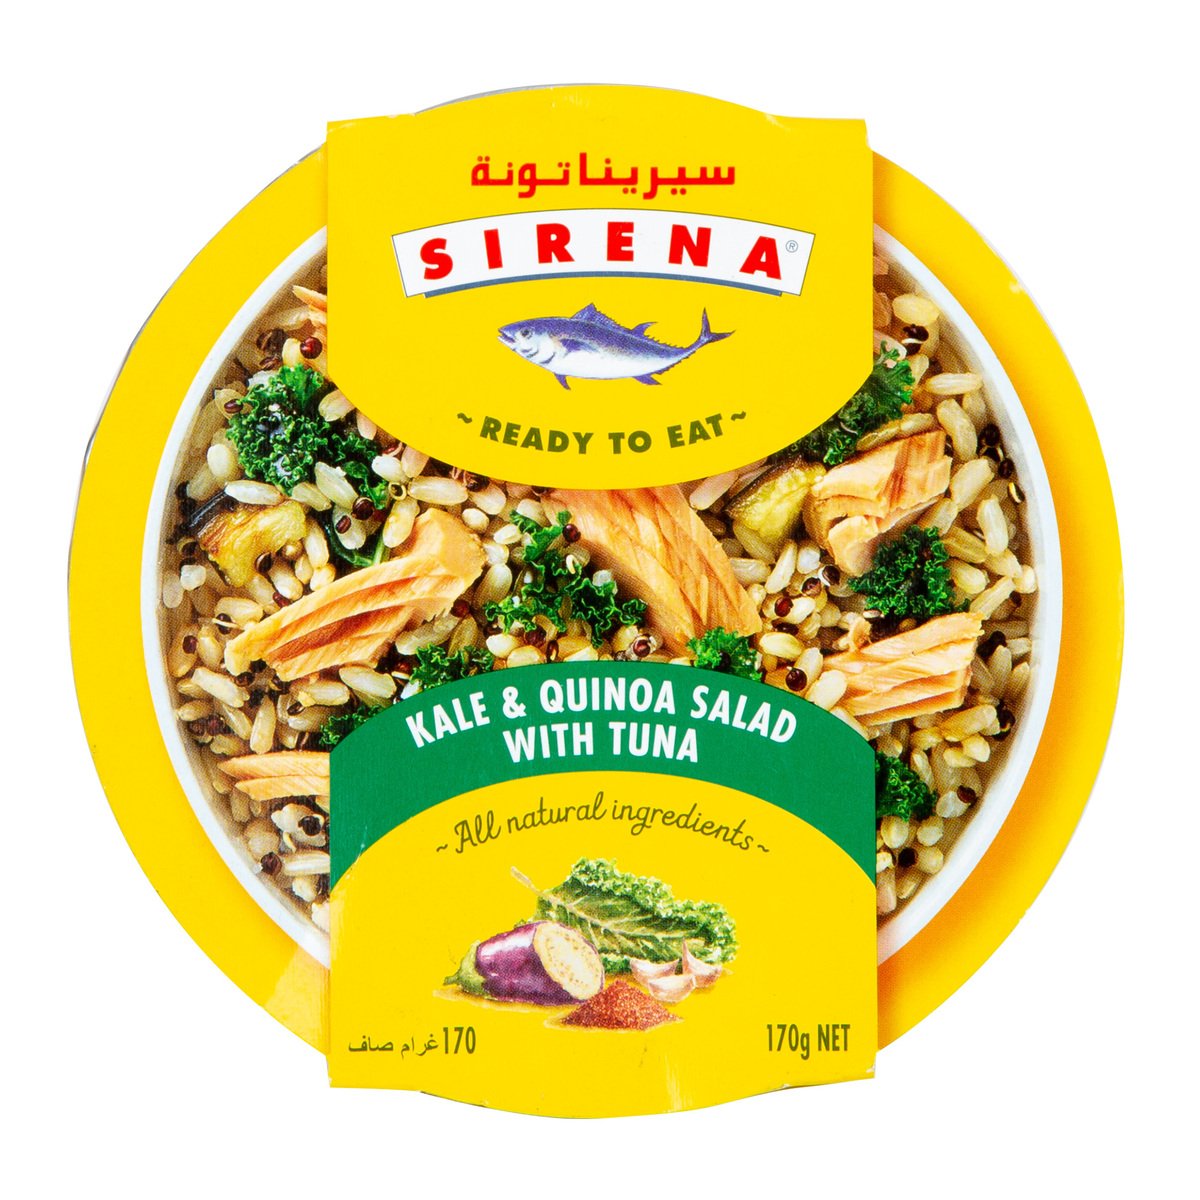 Sirena Kale & Quinoa Salad With Tuna 170 g